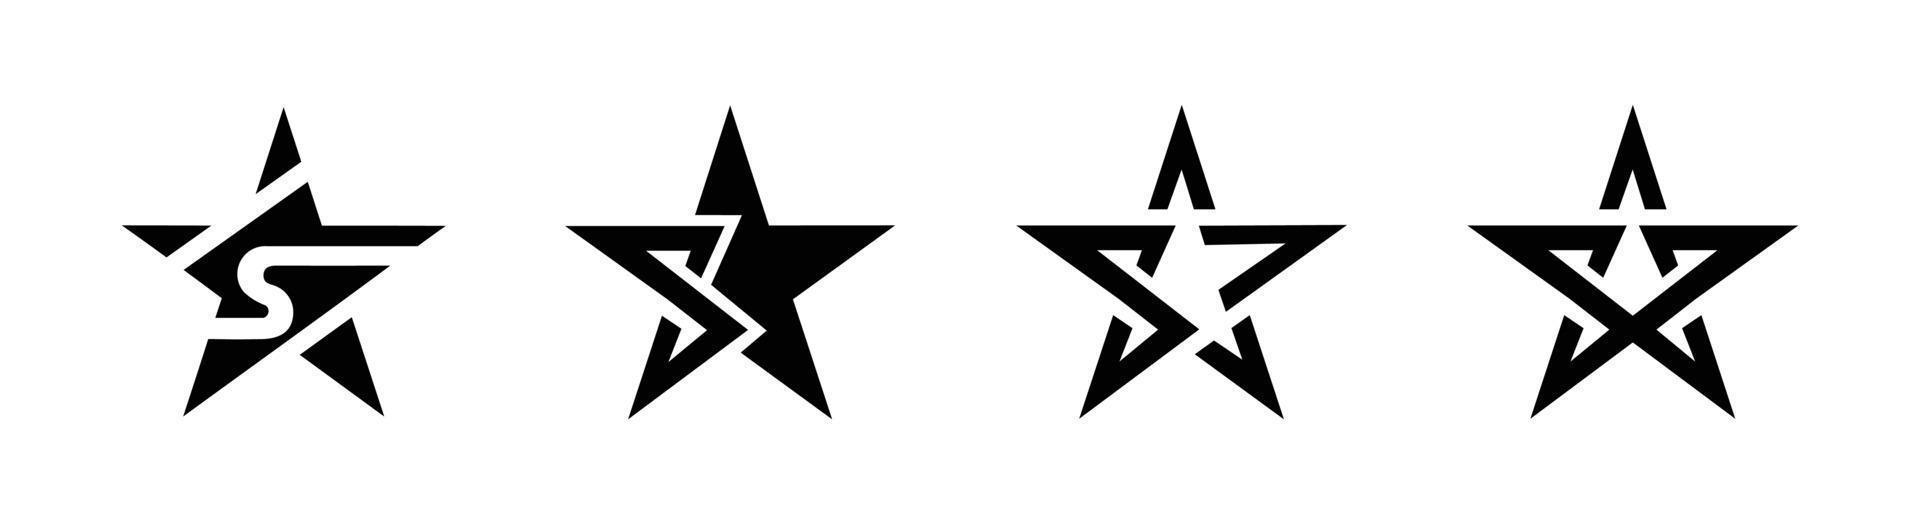 vecteur de modèle de logo étoile, ensemble d'icônes vectorielles étoile de symboles isolés.